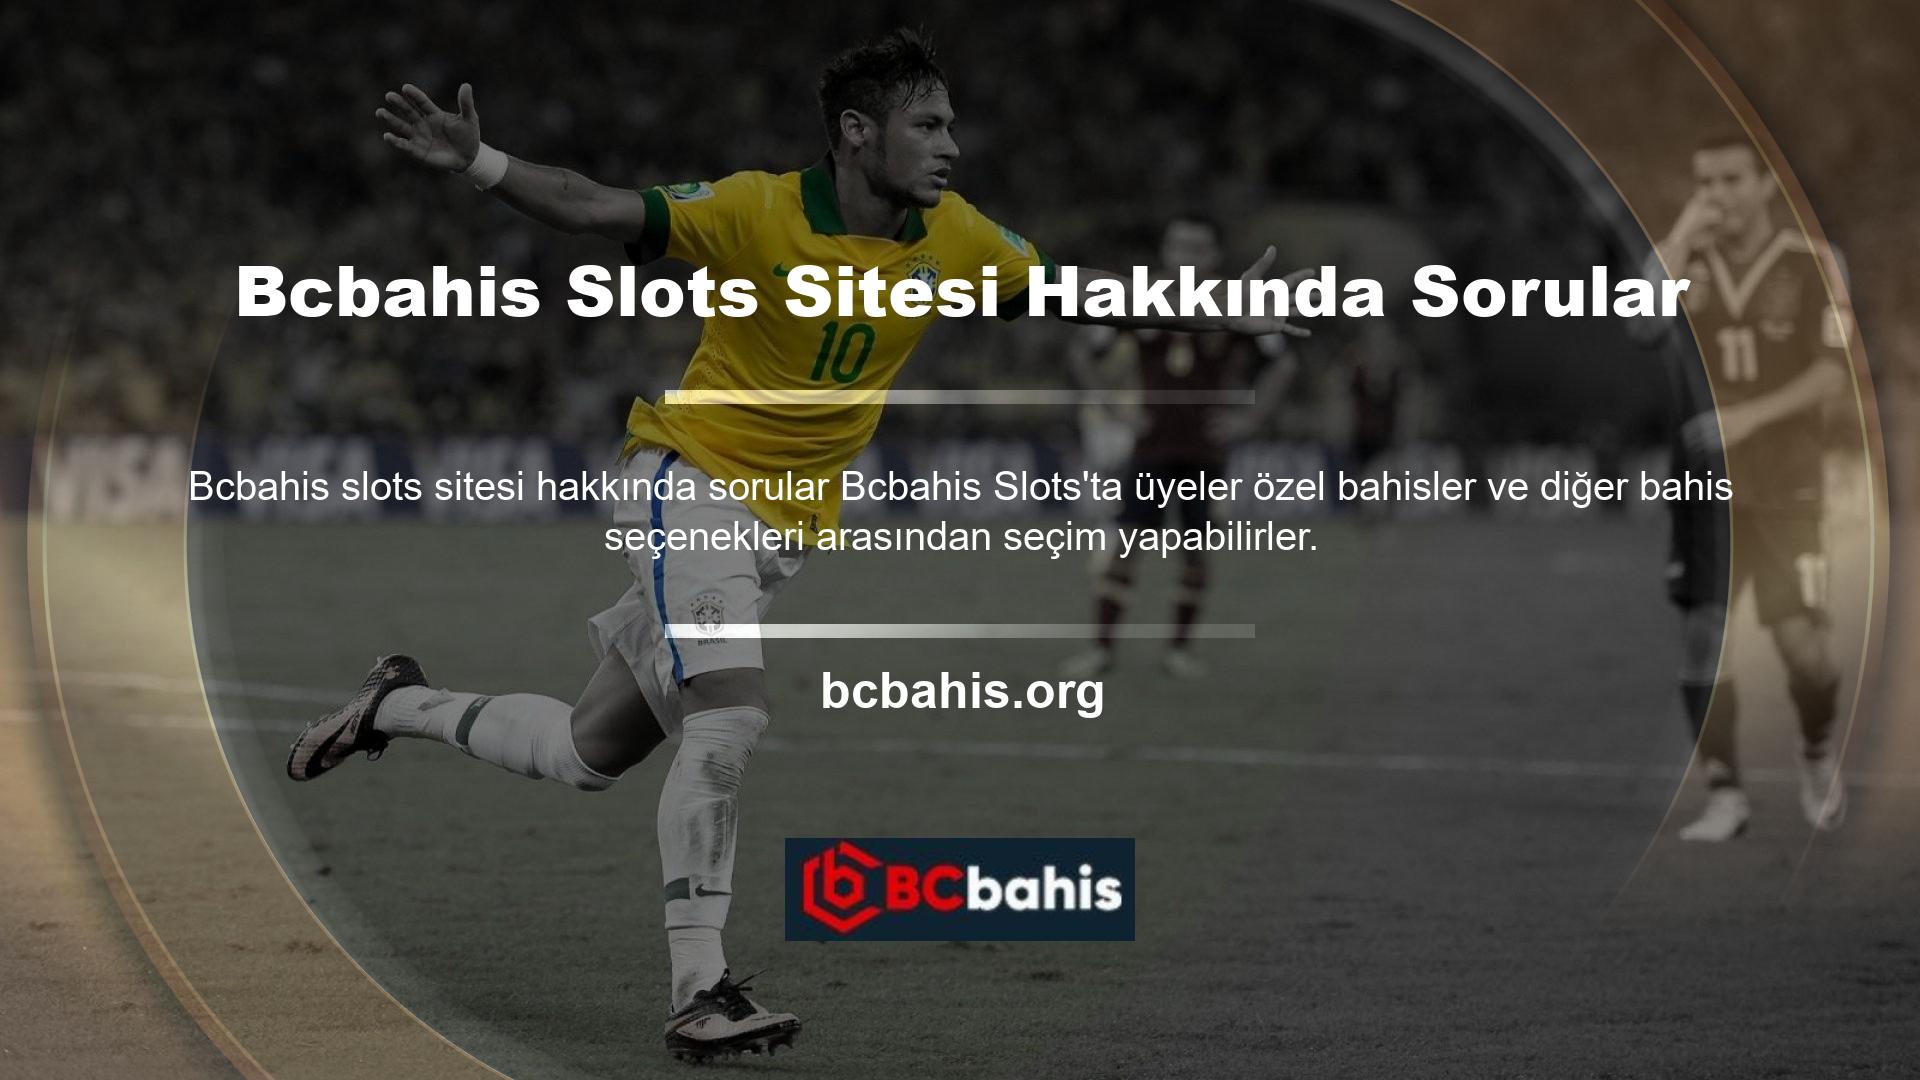 Canlı bahis seçeneği ile günün her saatinde bahis oynayabilir ve Bcbahis slot sitesi ile ilgili sorularınızı takip edebilirsiniz